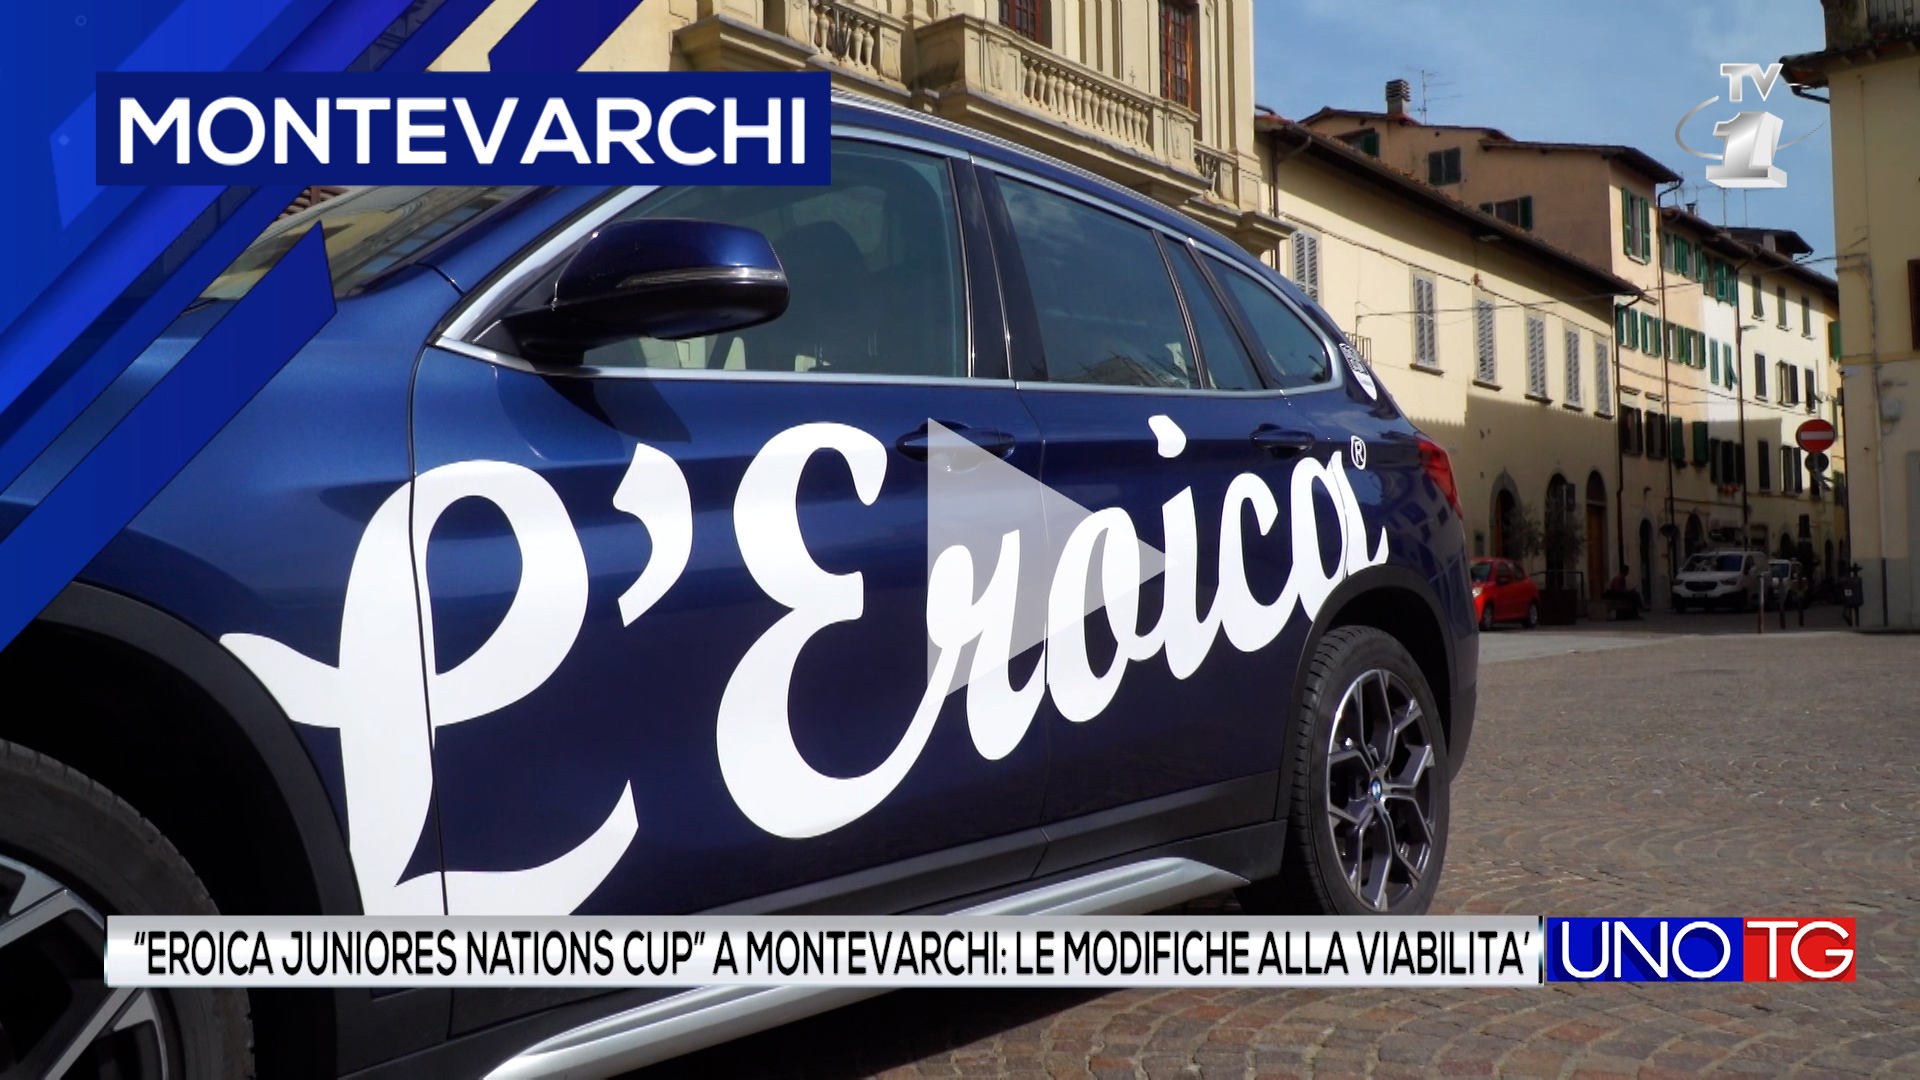 "Eroica juniores nations cup" a Montevarchi: le modifiche alla viabilità